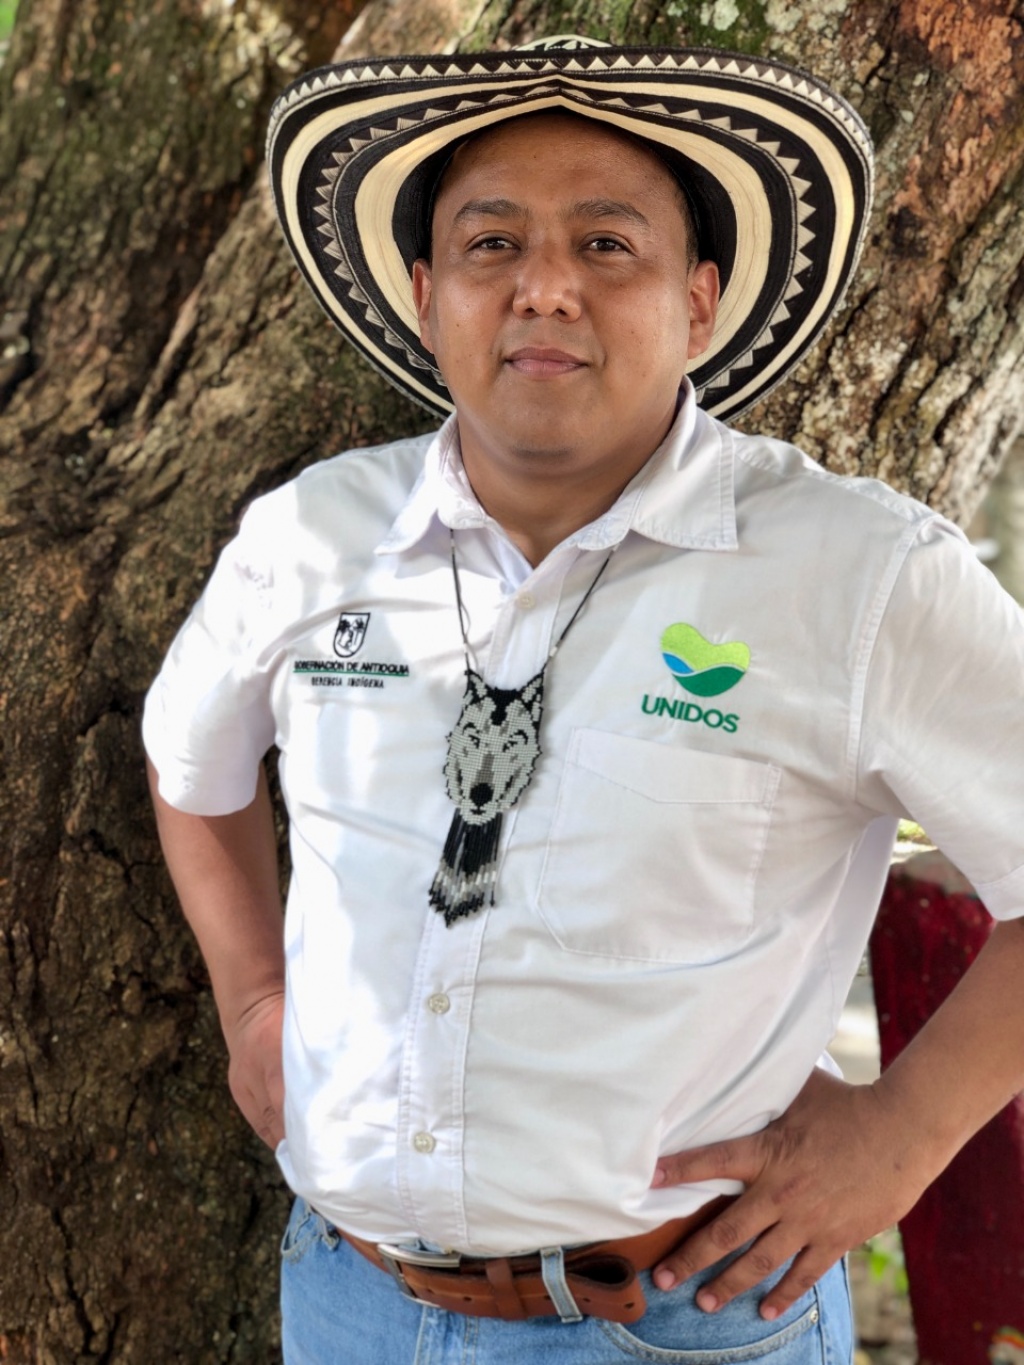 El gerente Indígena de Antioquia, Richar Sierra Alquerque será ponente en Leticia, en conversatorio sobre seguridad climática y comunidades indígenas